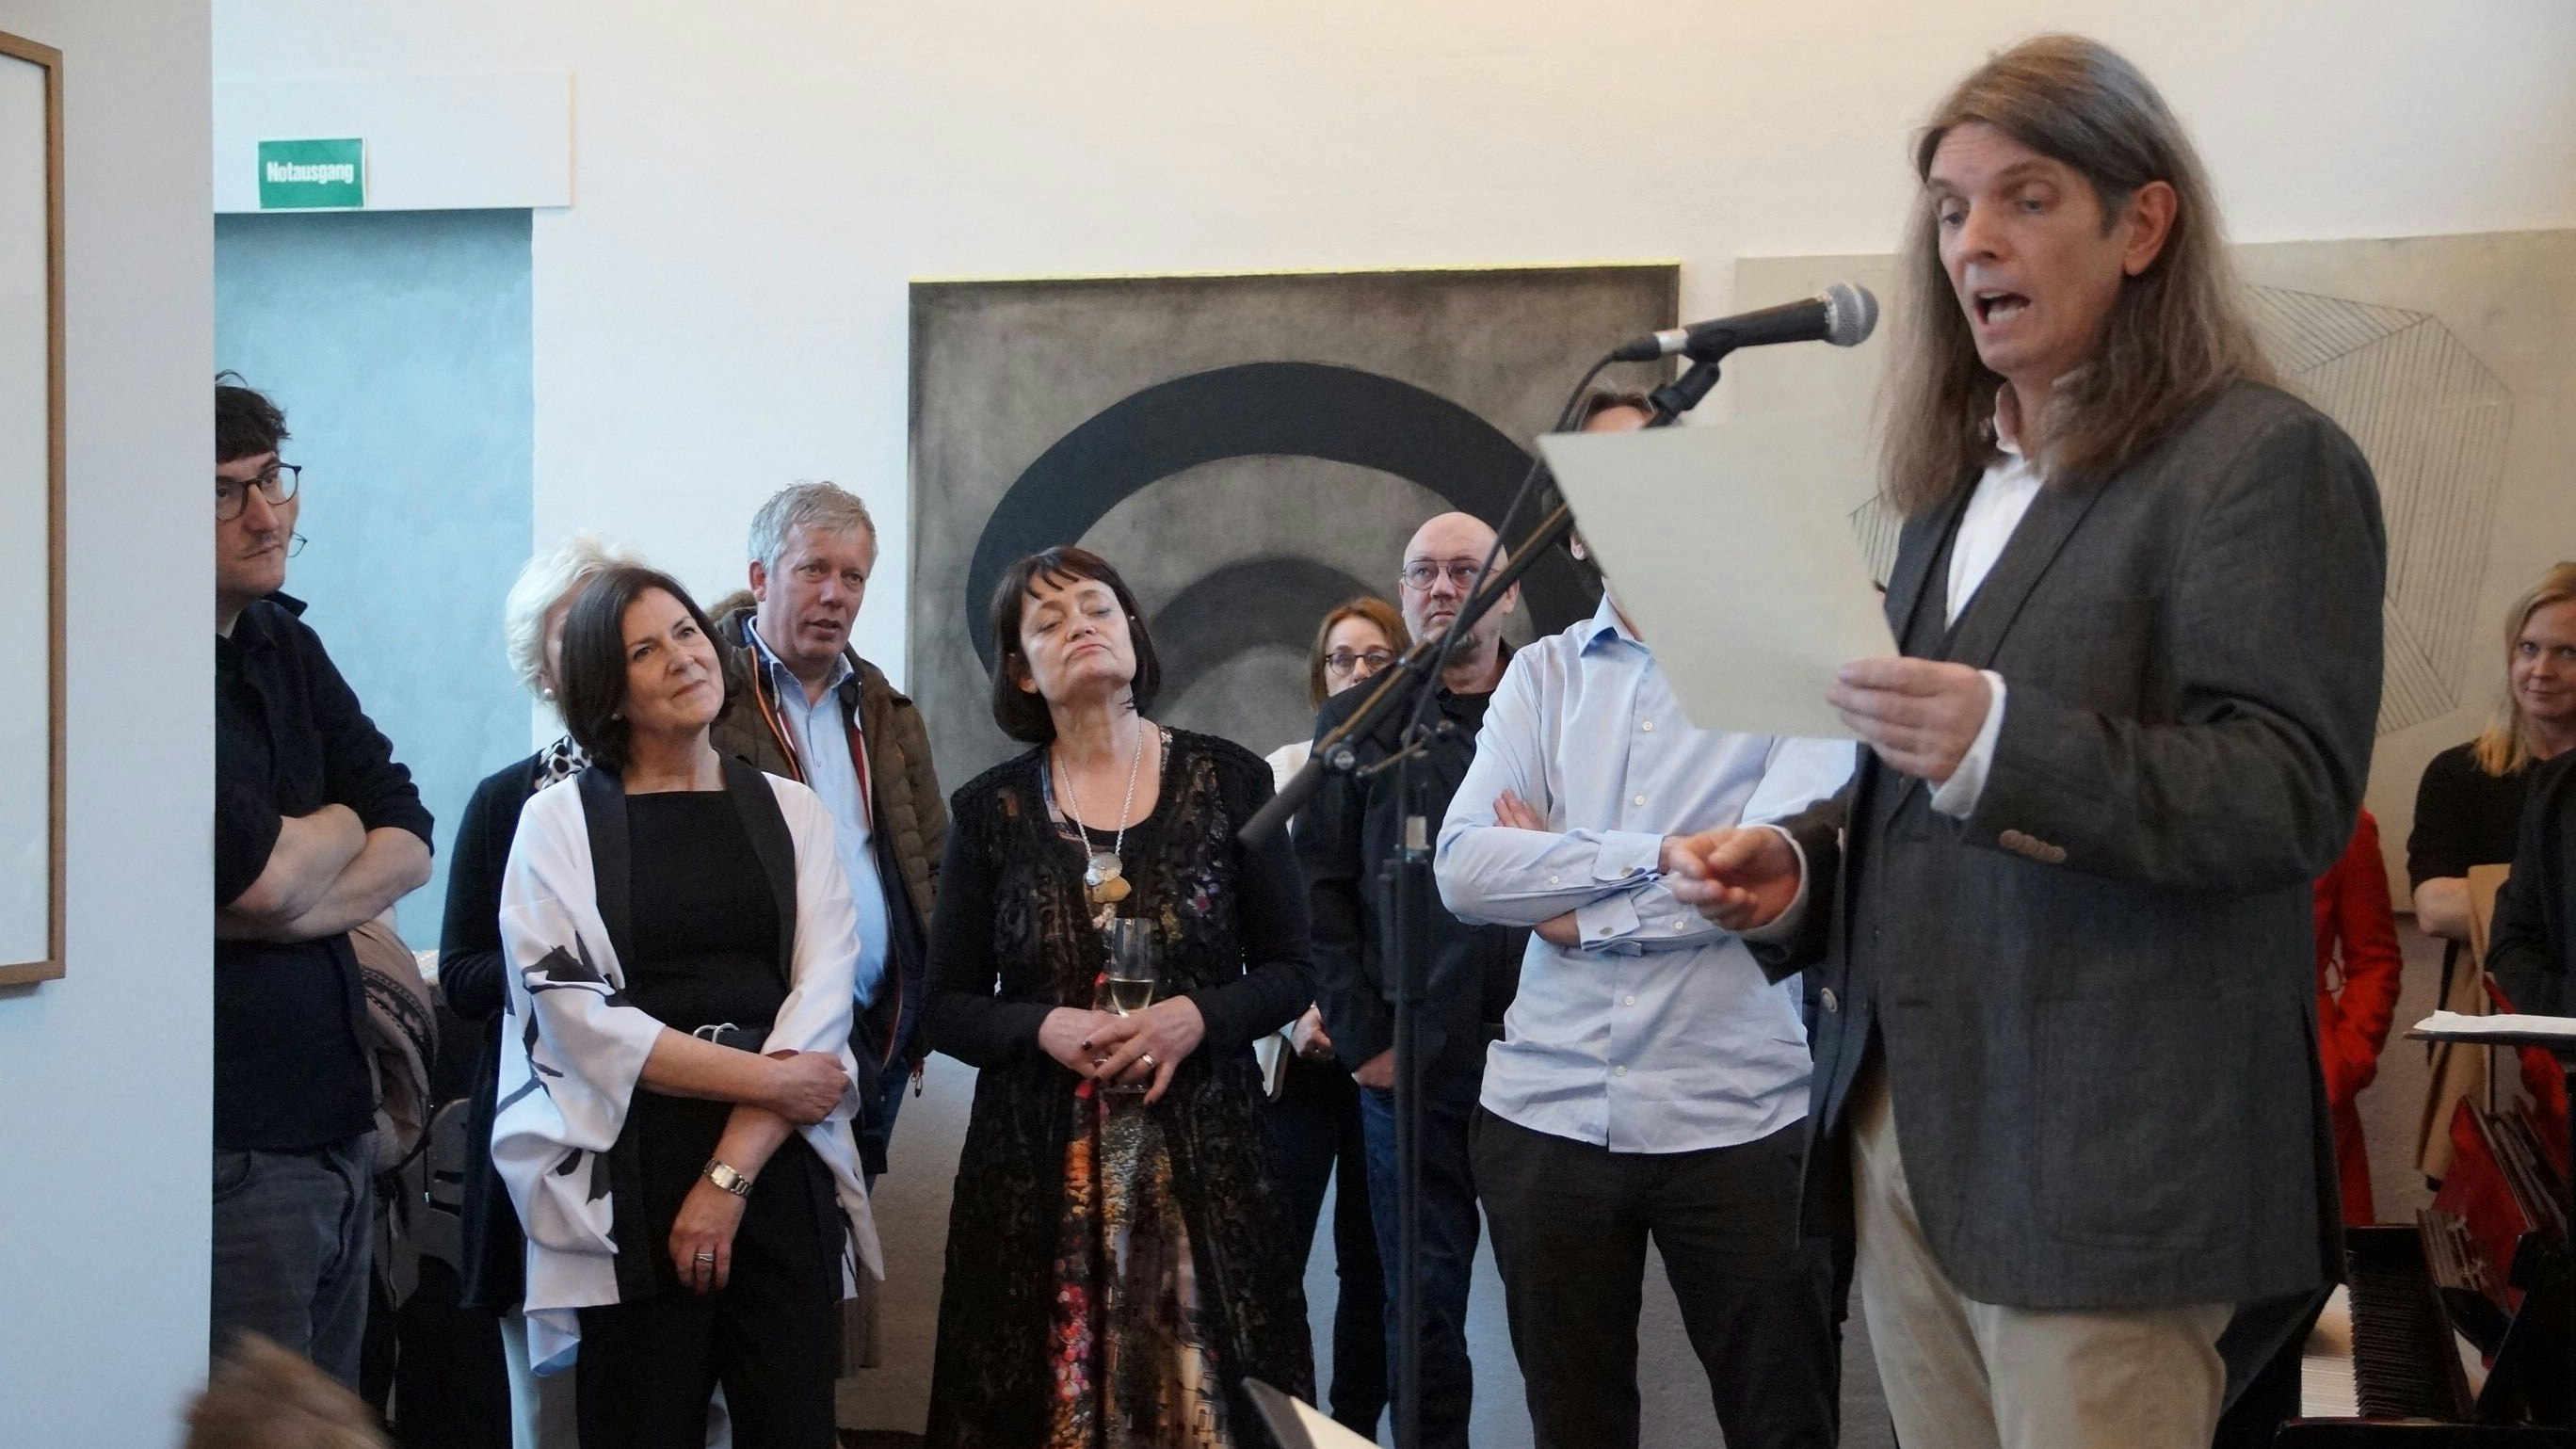 Traum erfüllt: David Beavan (rechts) hat mit seiner Frau Ute (Mitte) eine Full-Time-Gallery geschaffen. Foto: Brauns-Bömermann